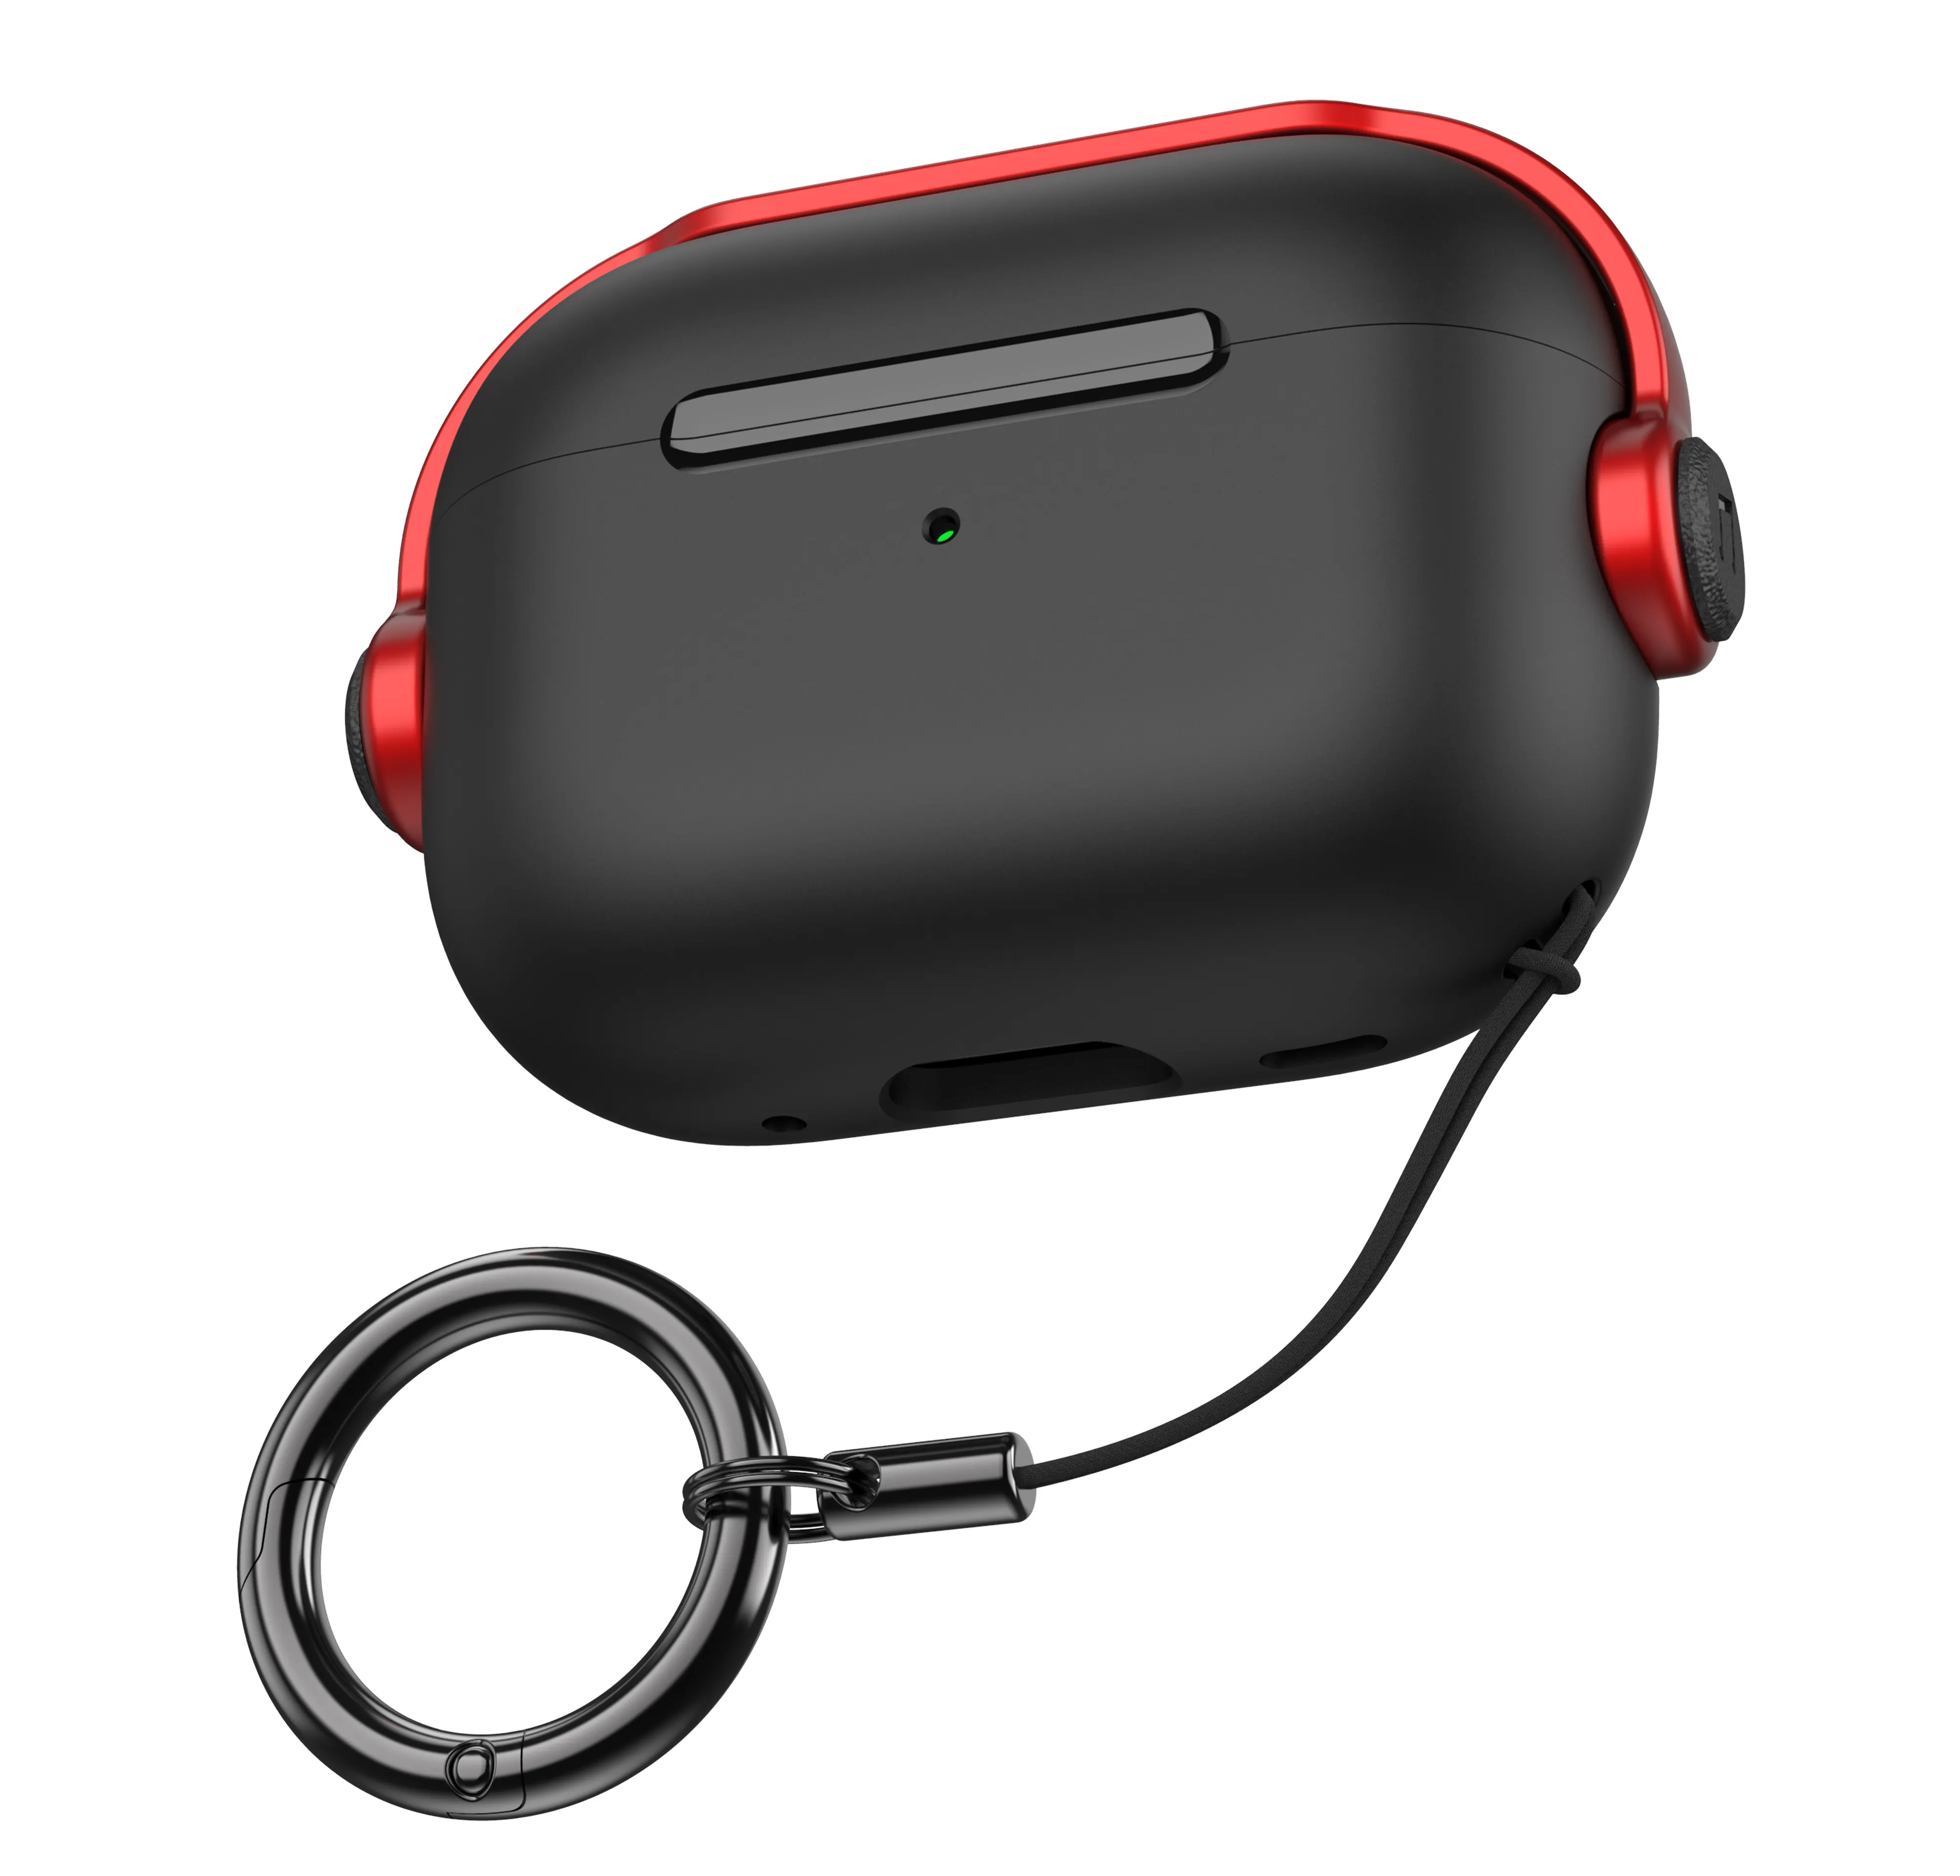 Weview sıcak satış müzik kulaklık kutusu tutucu ile Airpods için pro 2 3 kılıfları toptan